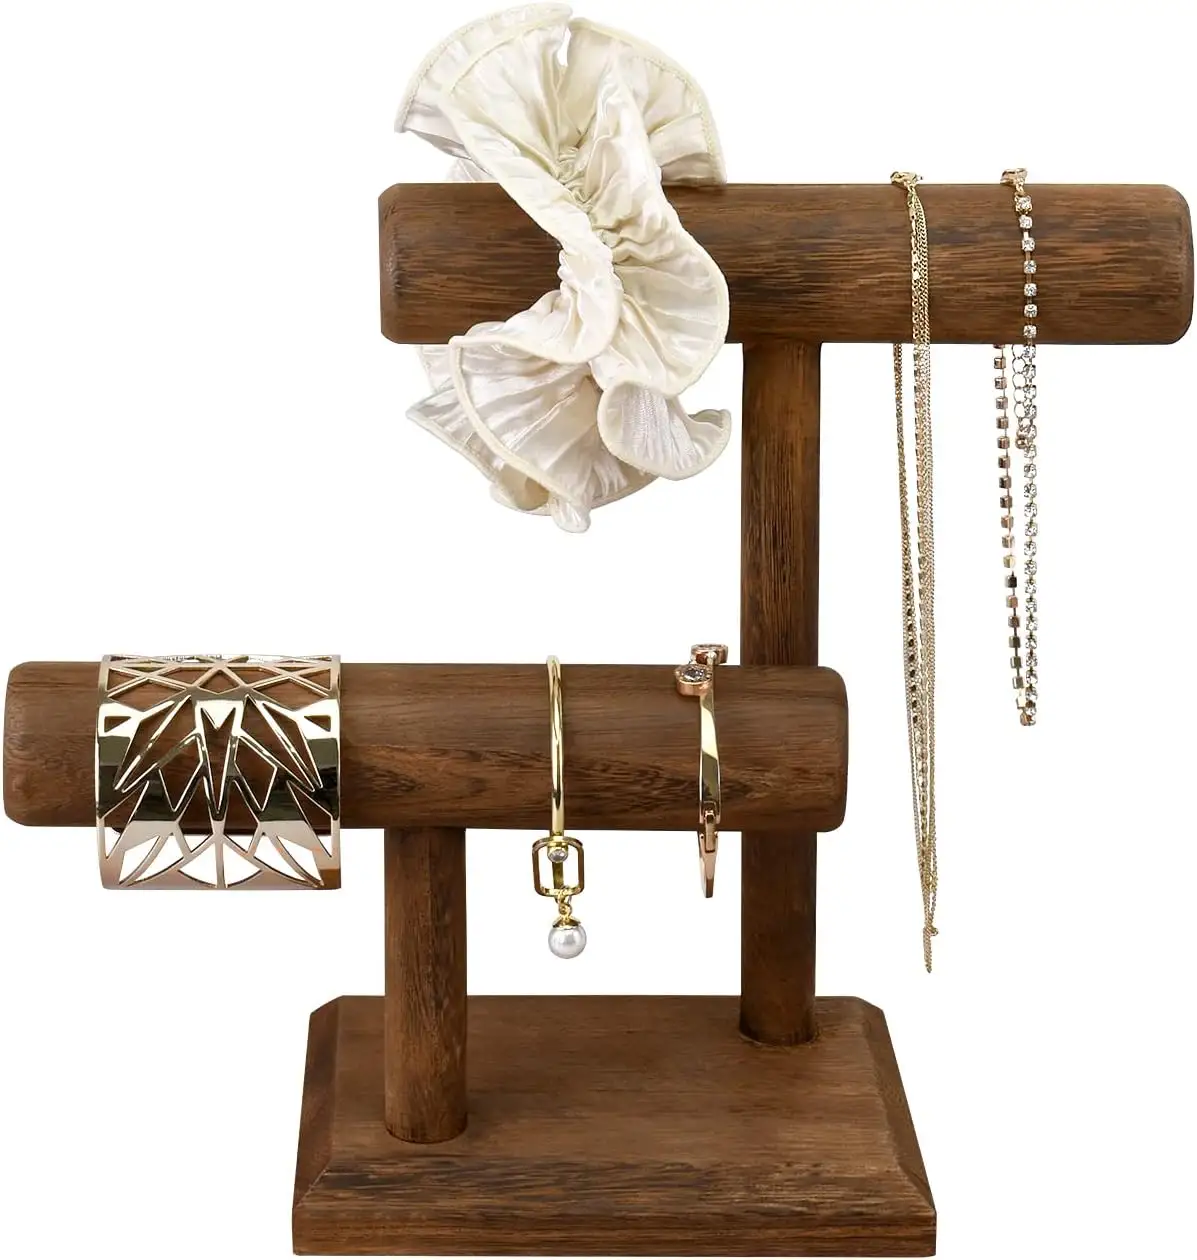 Tour de présentation de bijoux en bois à 2 niveaux, support de rangement pour collier chouchou